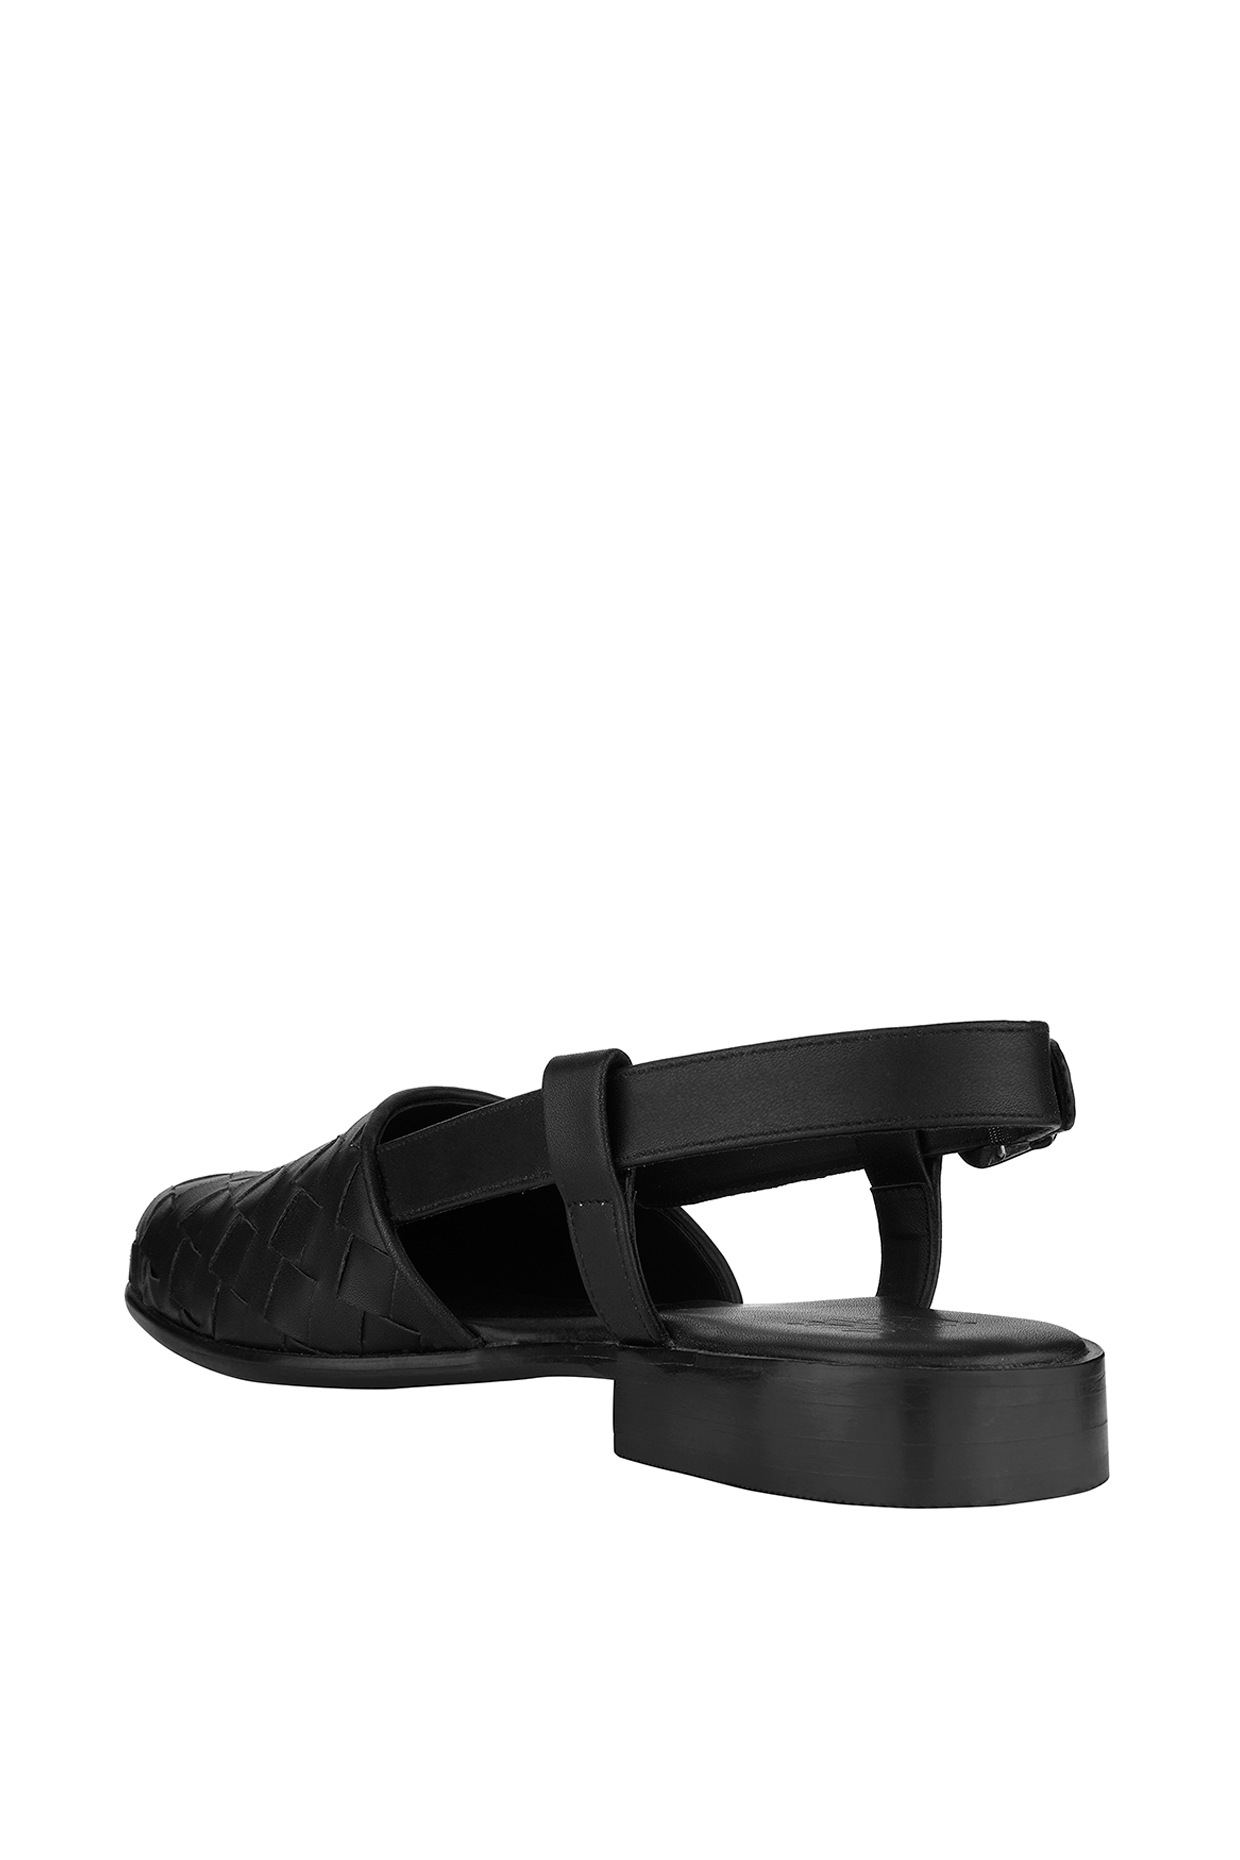 Buy Black Oxford Peshawari Shoe-Sandal by PRATAP MEN at Ogaan Online  Shopping Site